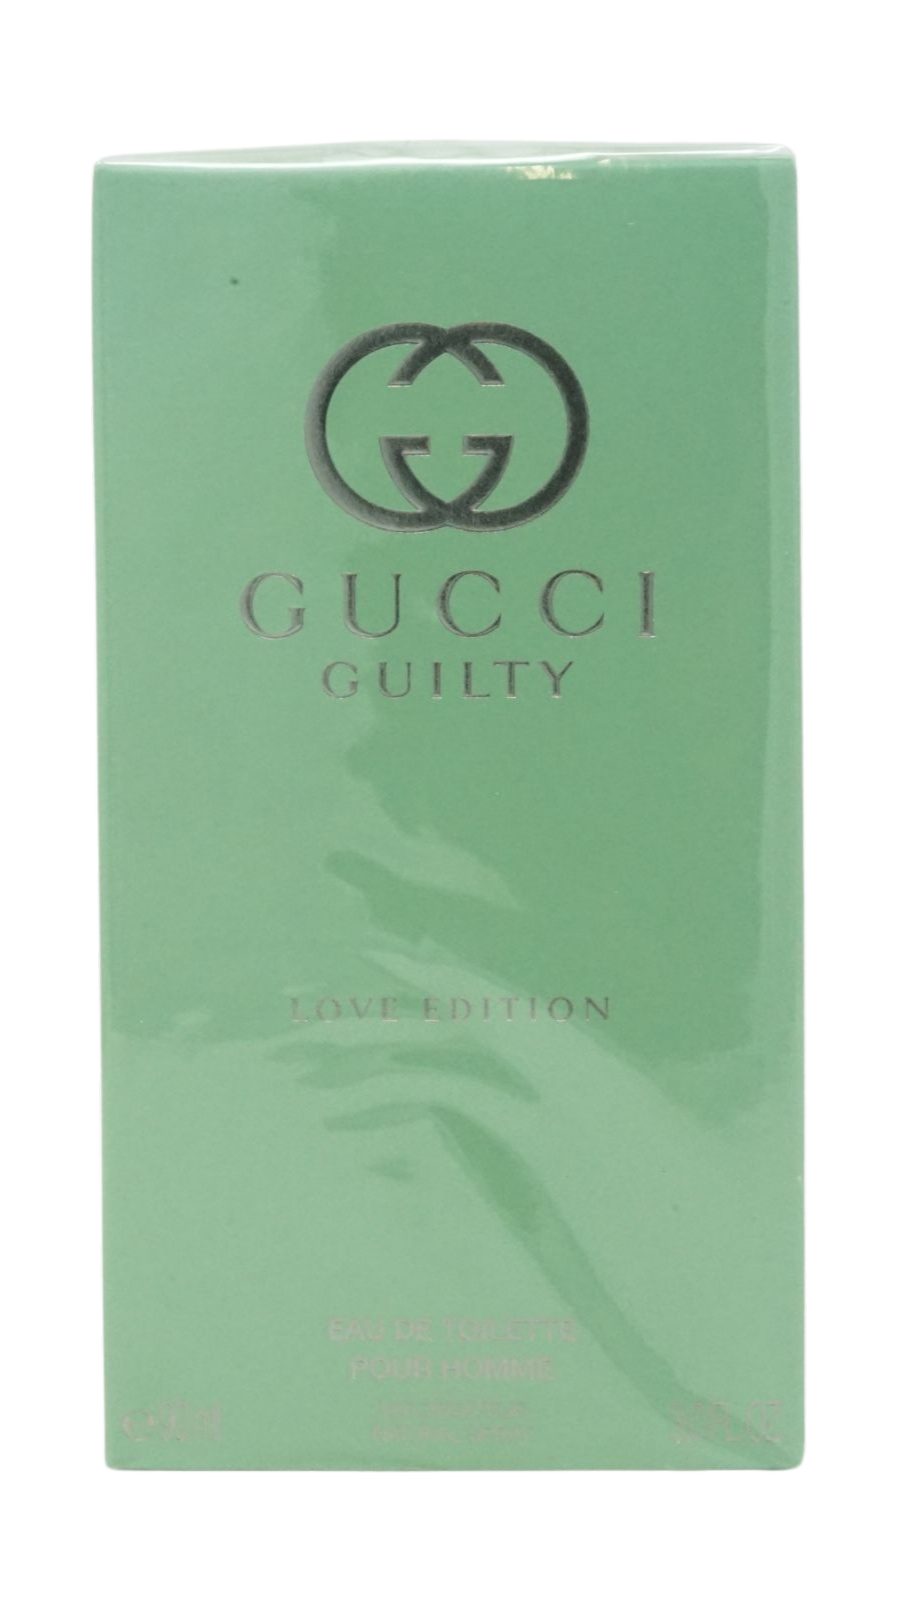 Toilette Edition Eau Love Guilty Gucci Eau pour Toilette de homme 50ml GUCCI de